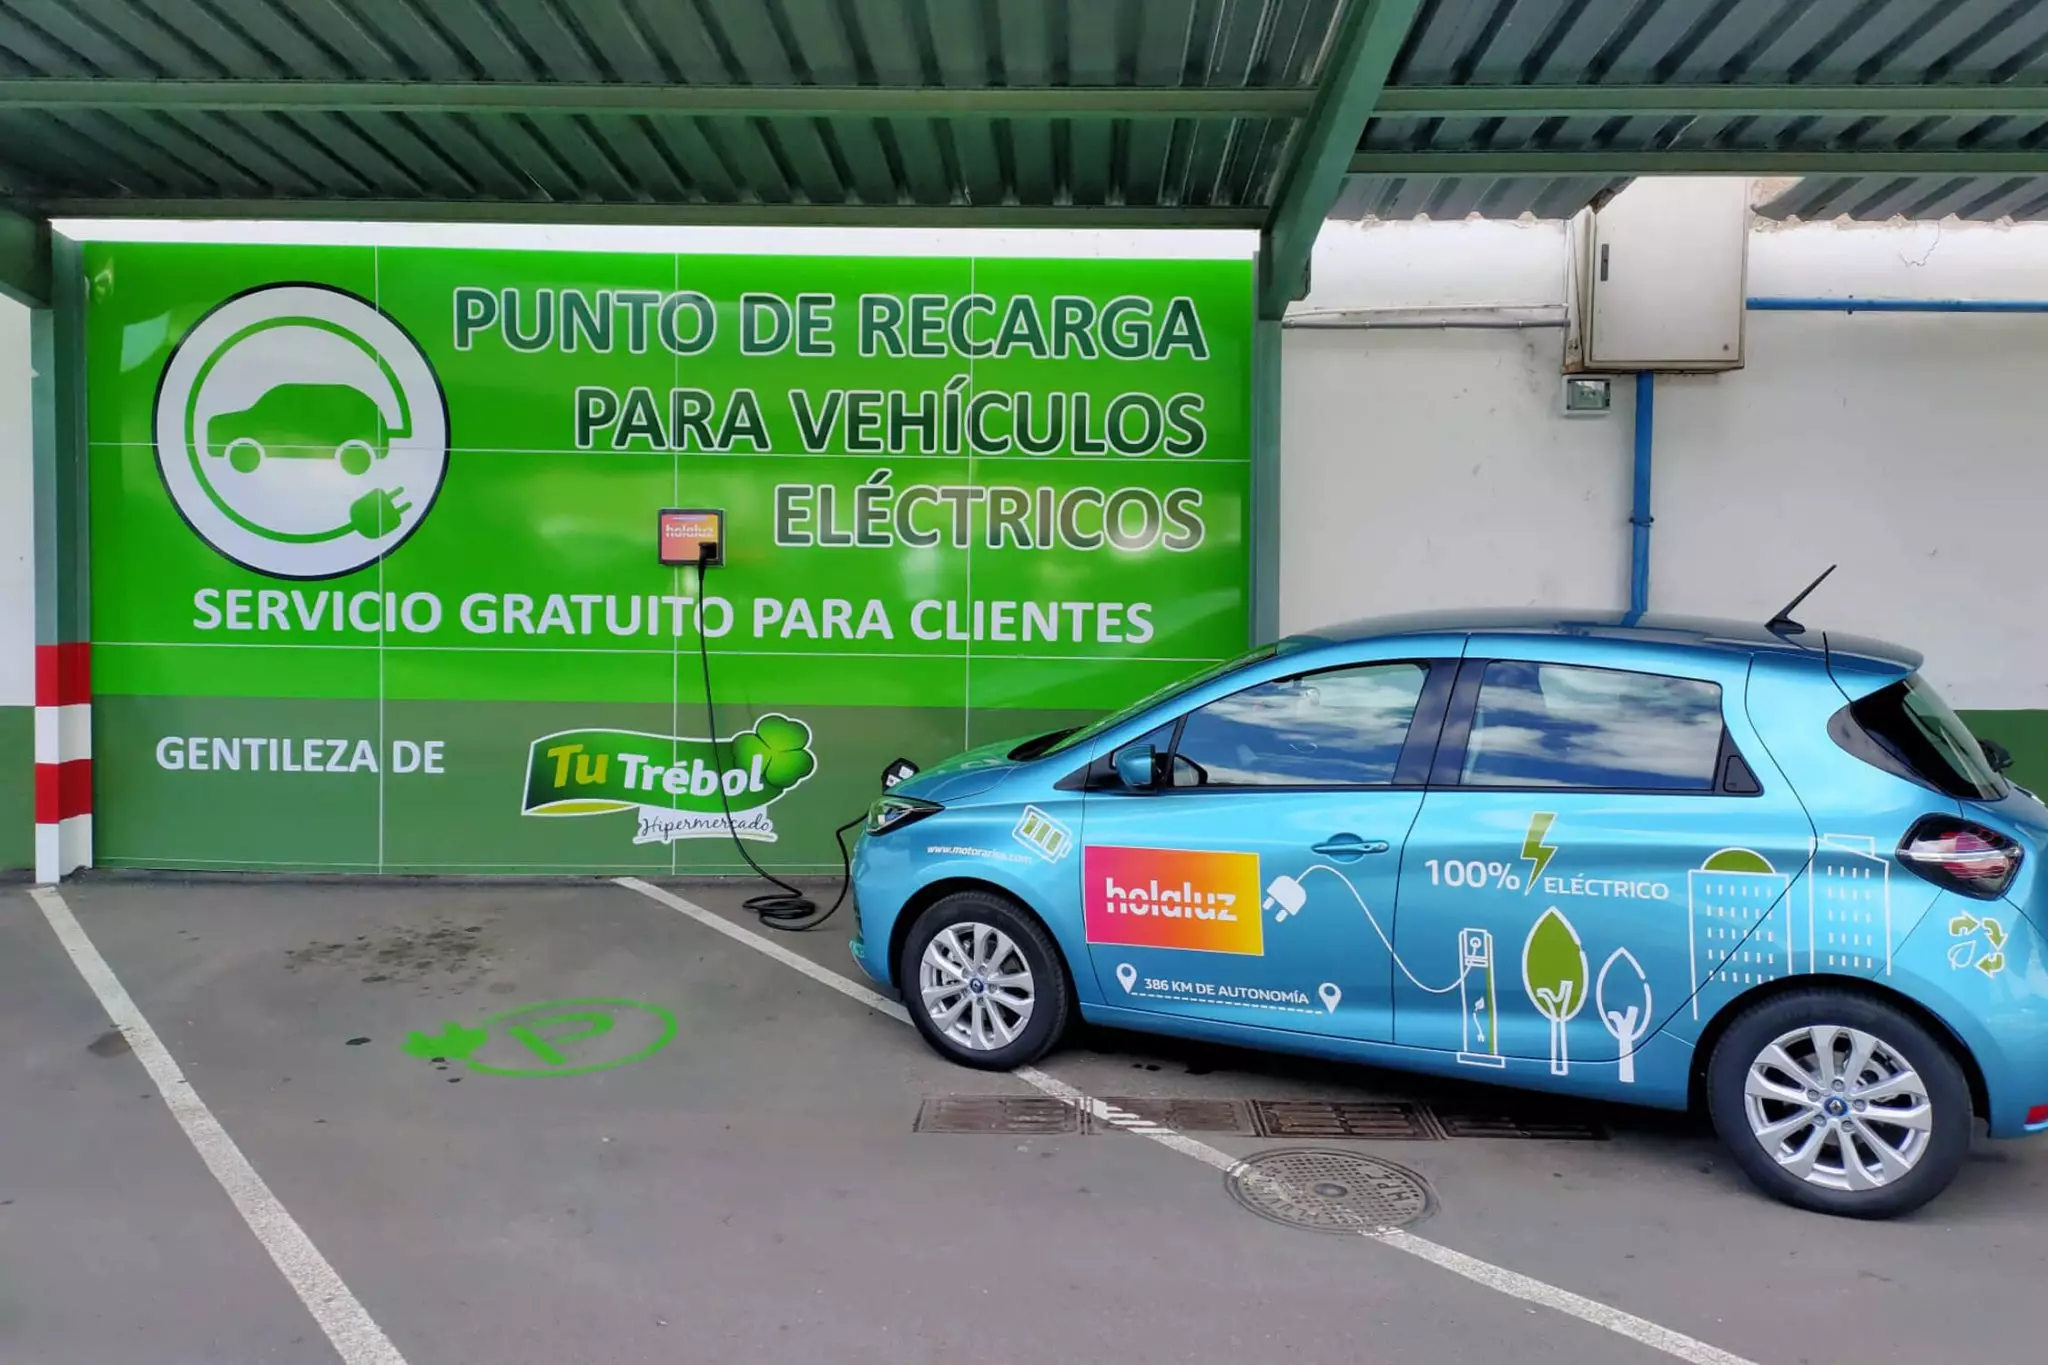 Featured image for “Tu Trébol Hipermercados y Holaluz instalan su primer punto de recarga para vehículos eléctricos”